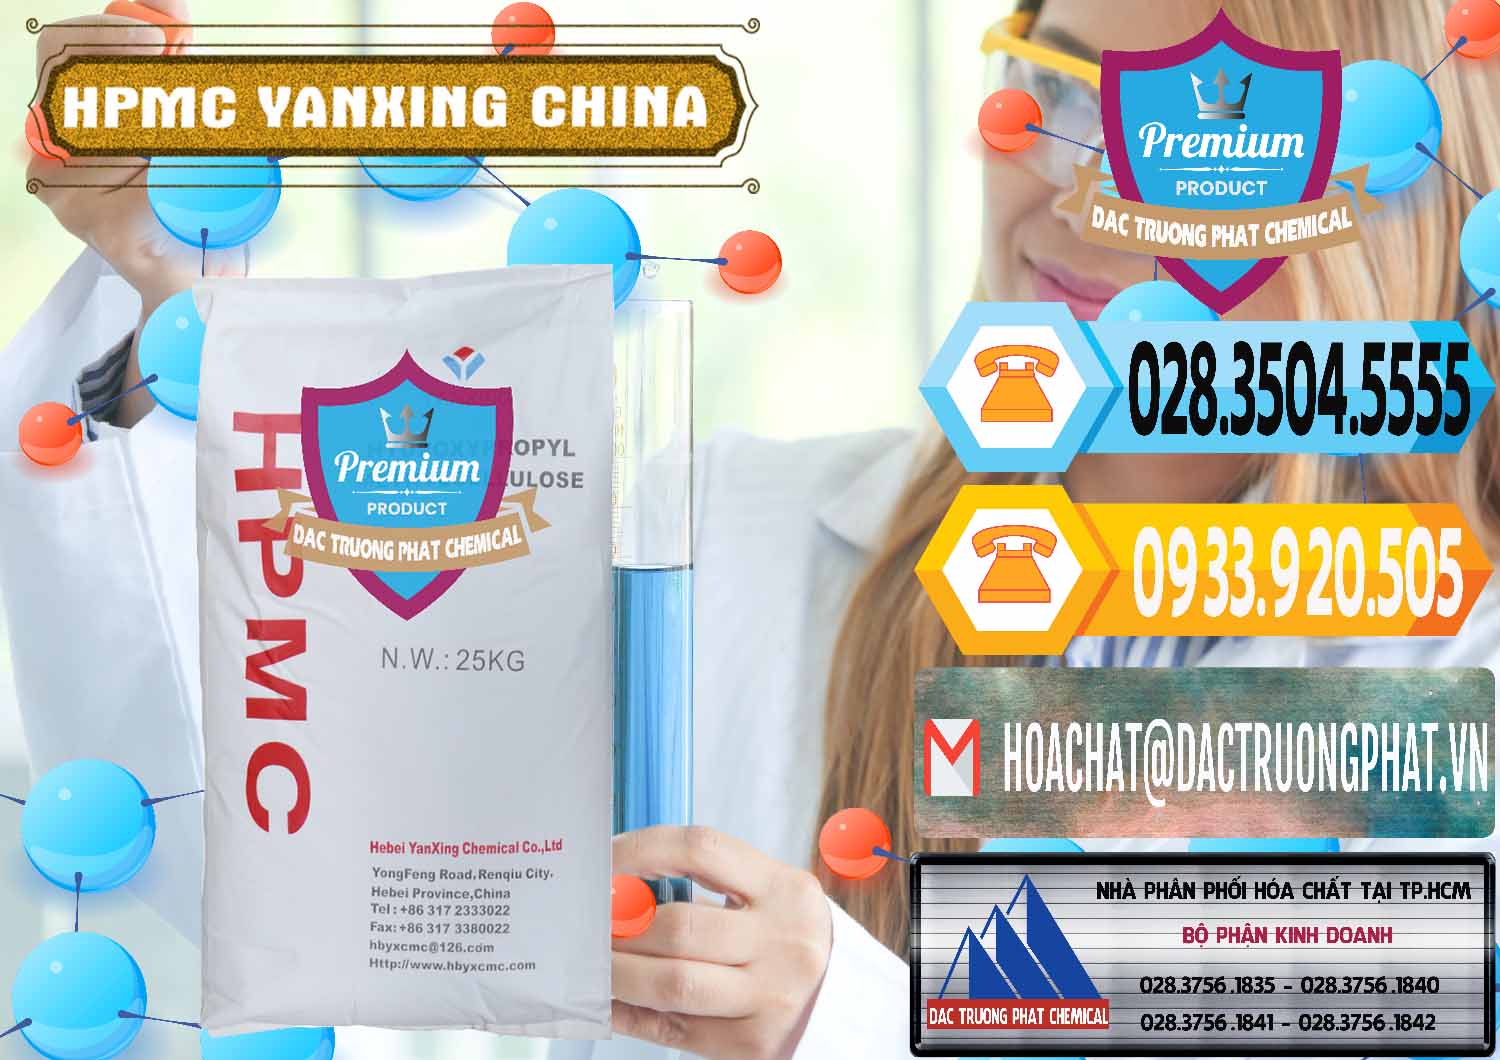 Công ty cung ứng - bán Chất Tạo Đặc HPMC - Hydroxypropyl Methyl Cellulose Yanxing Trung Quốc China - 0483 - Chuyên phân phối - cung cấp hóa chất tại TP.HCM - hoachattayrua.net